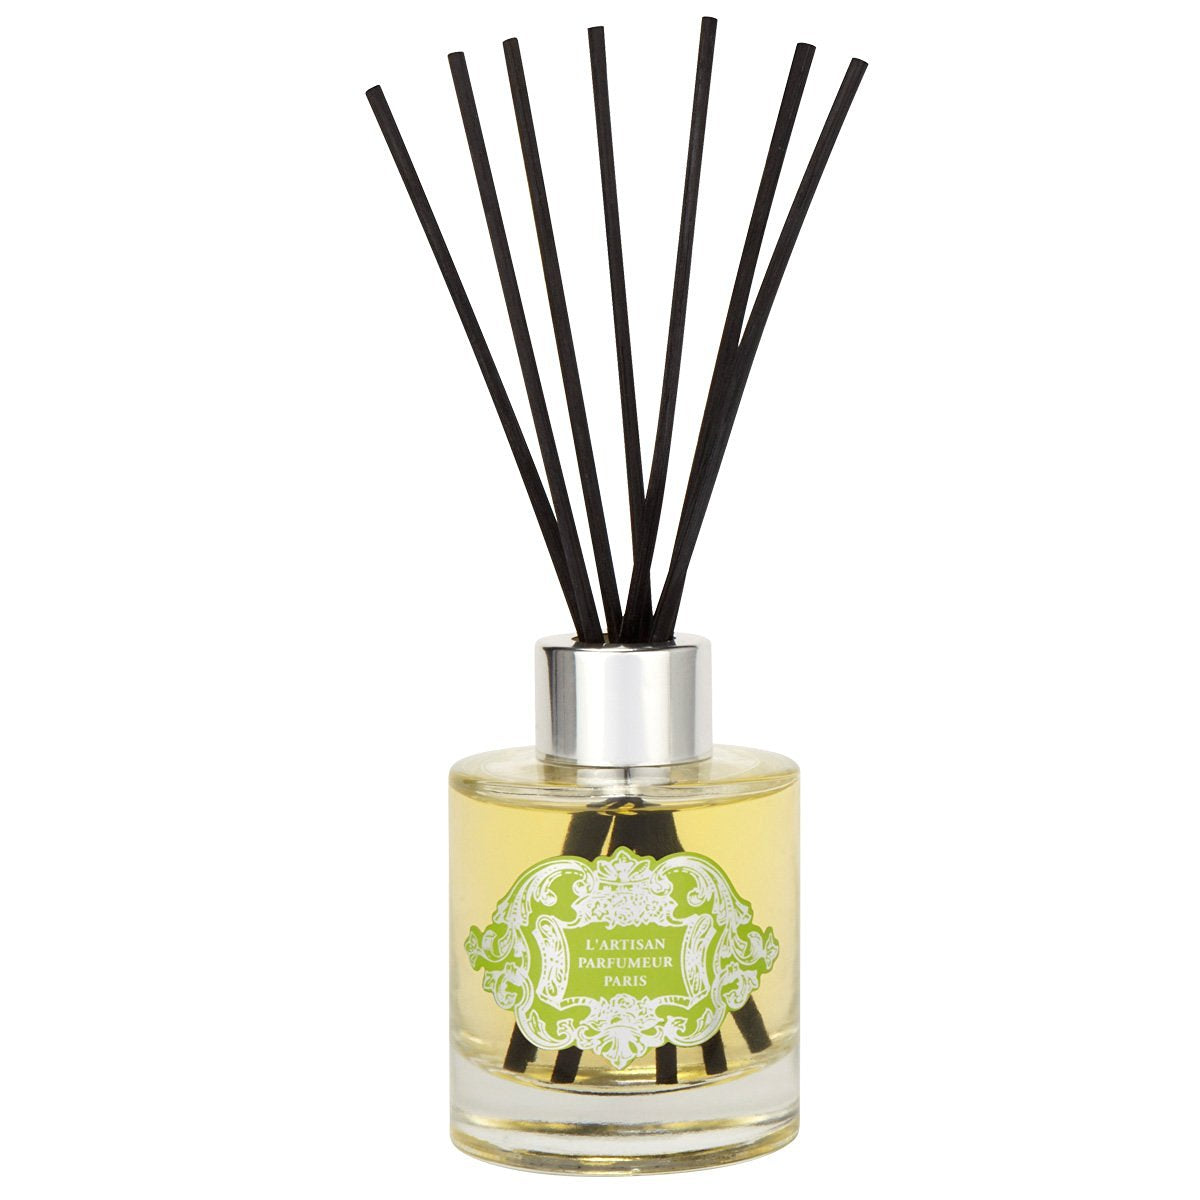 L'Artisan Parfumeur Home Fragrance Diffuser Le Printemps 120ml/4.0Oz New In Box